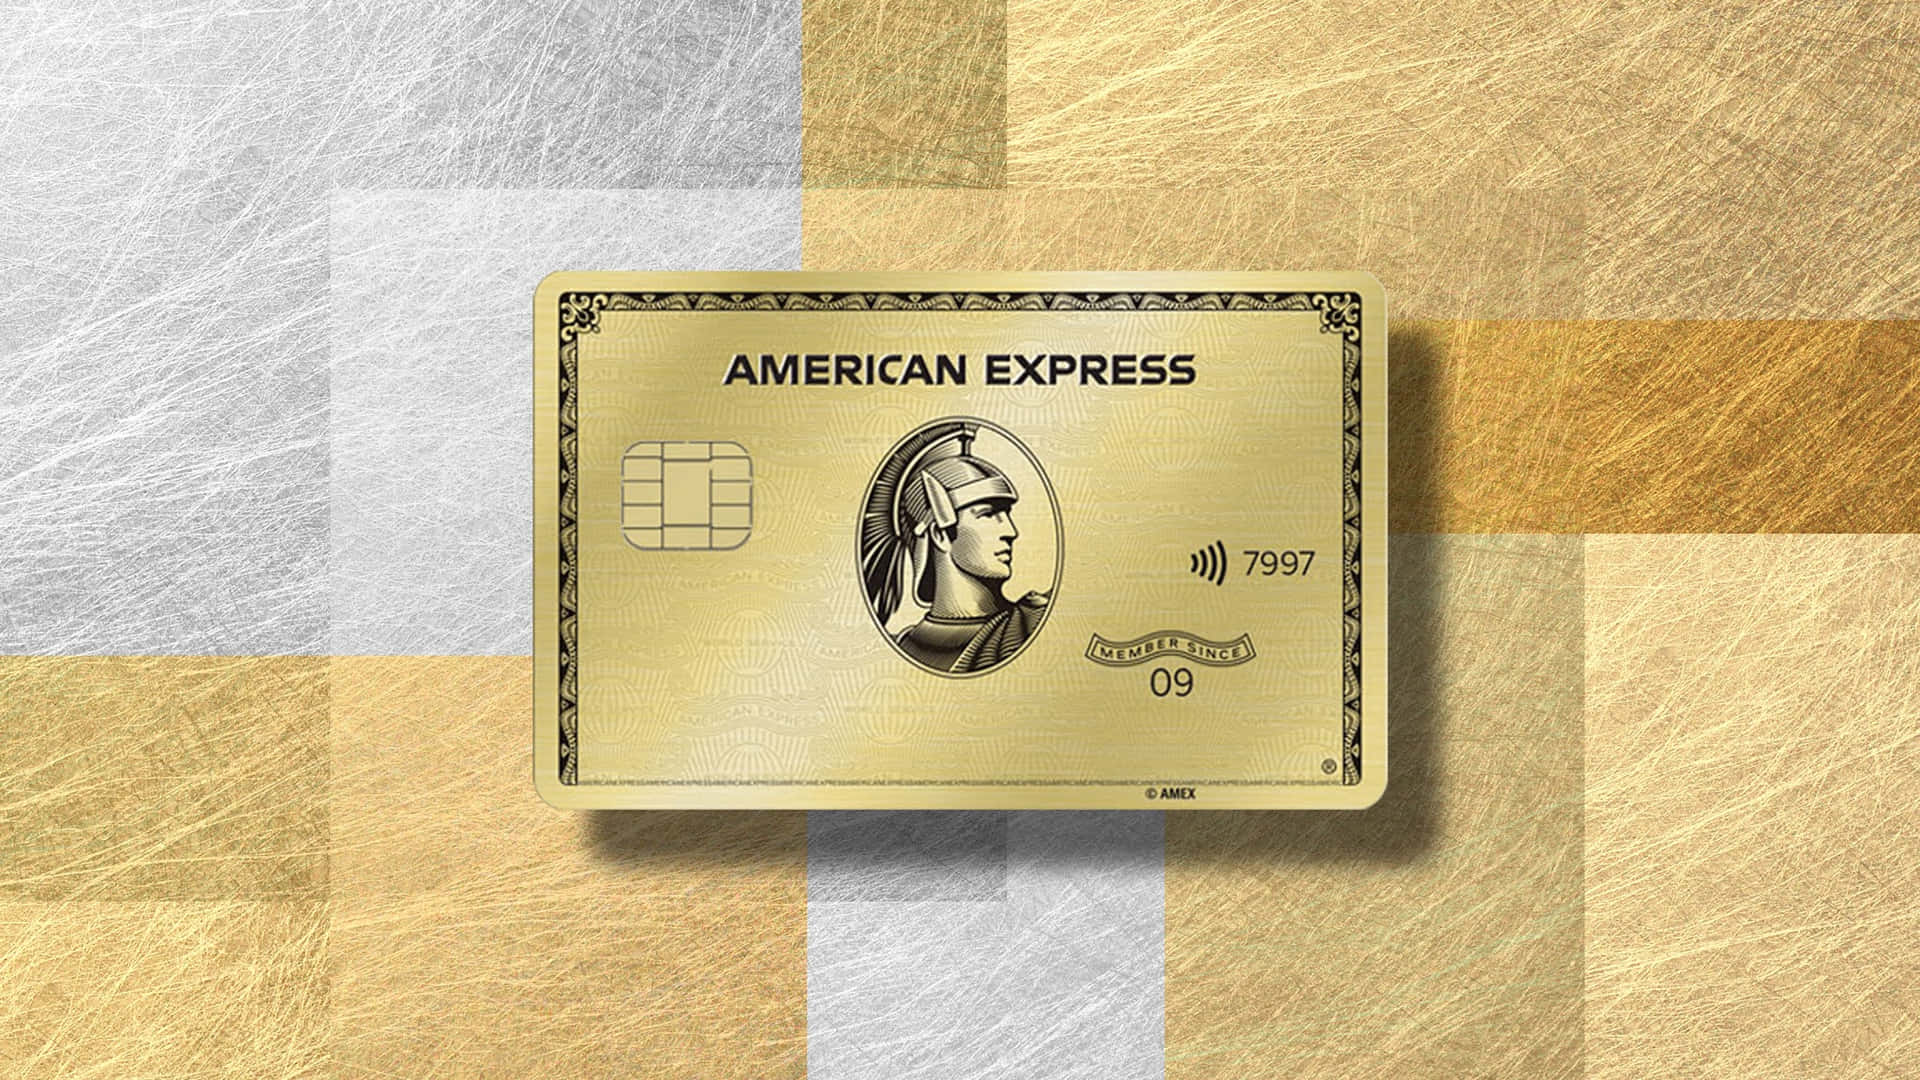 Sumérgeteen La Simplicidad Y La Opulencia Con American Express